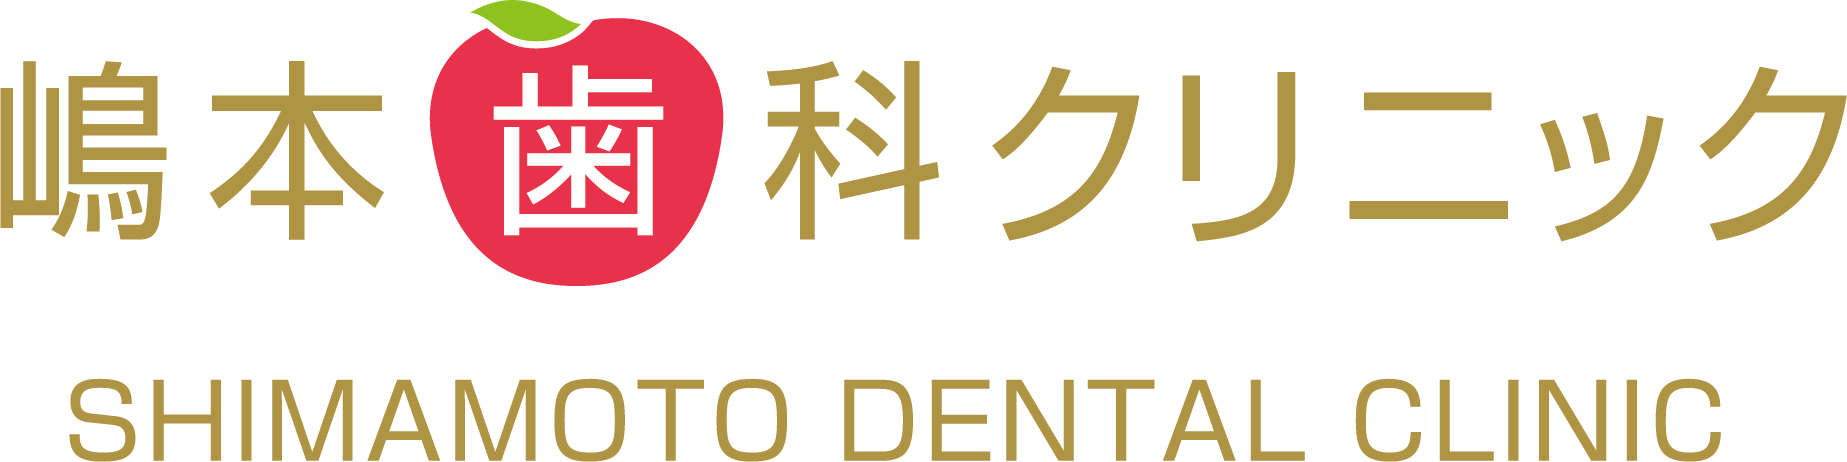 嶋本歯科クリニック_logo